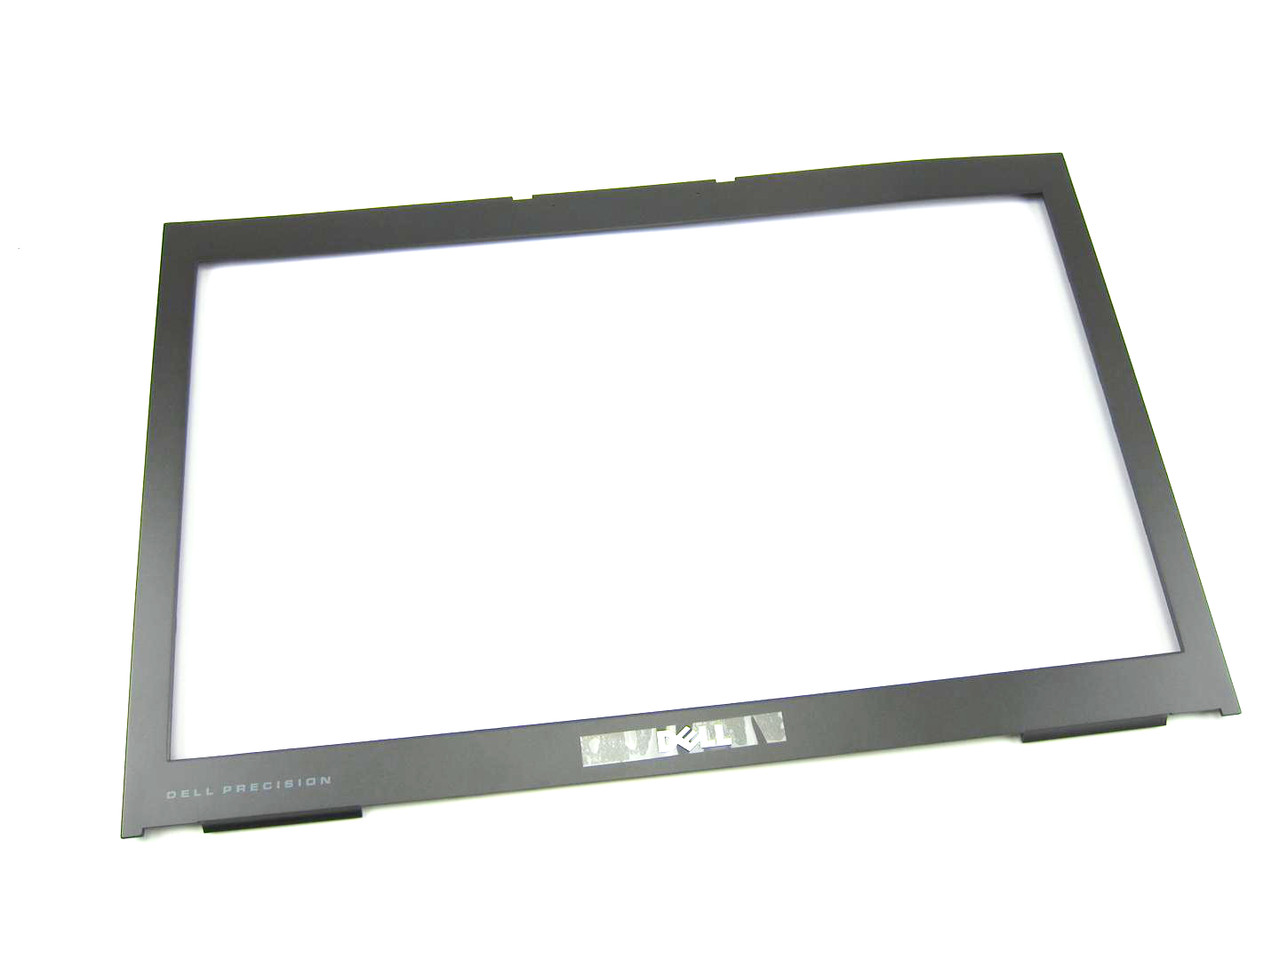 Dell Precision M6600 LCD Trim Cover Bezel - No Camera - NV3JM (A)